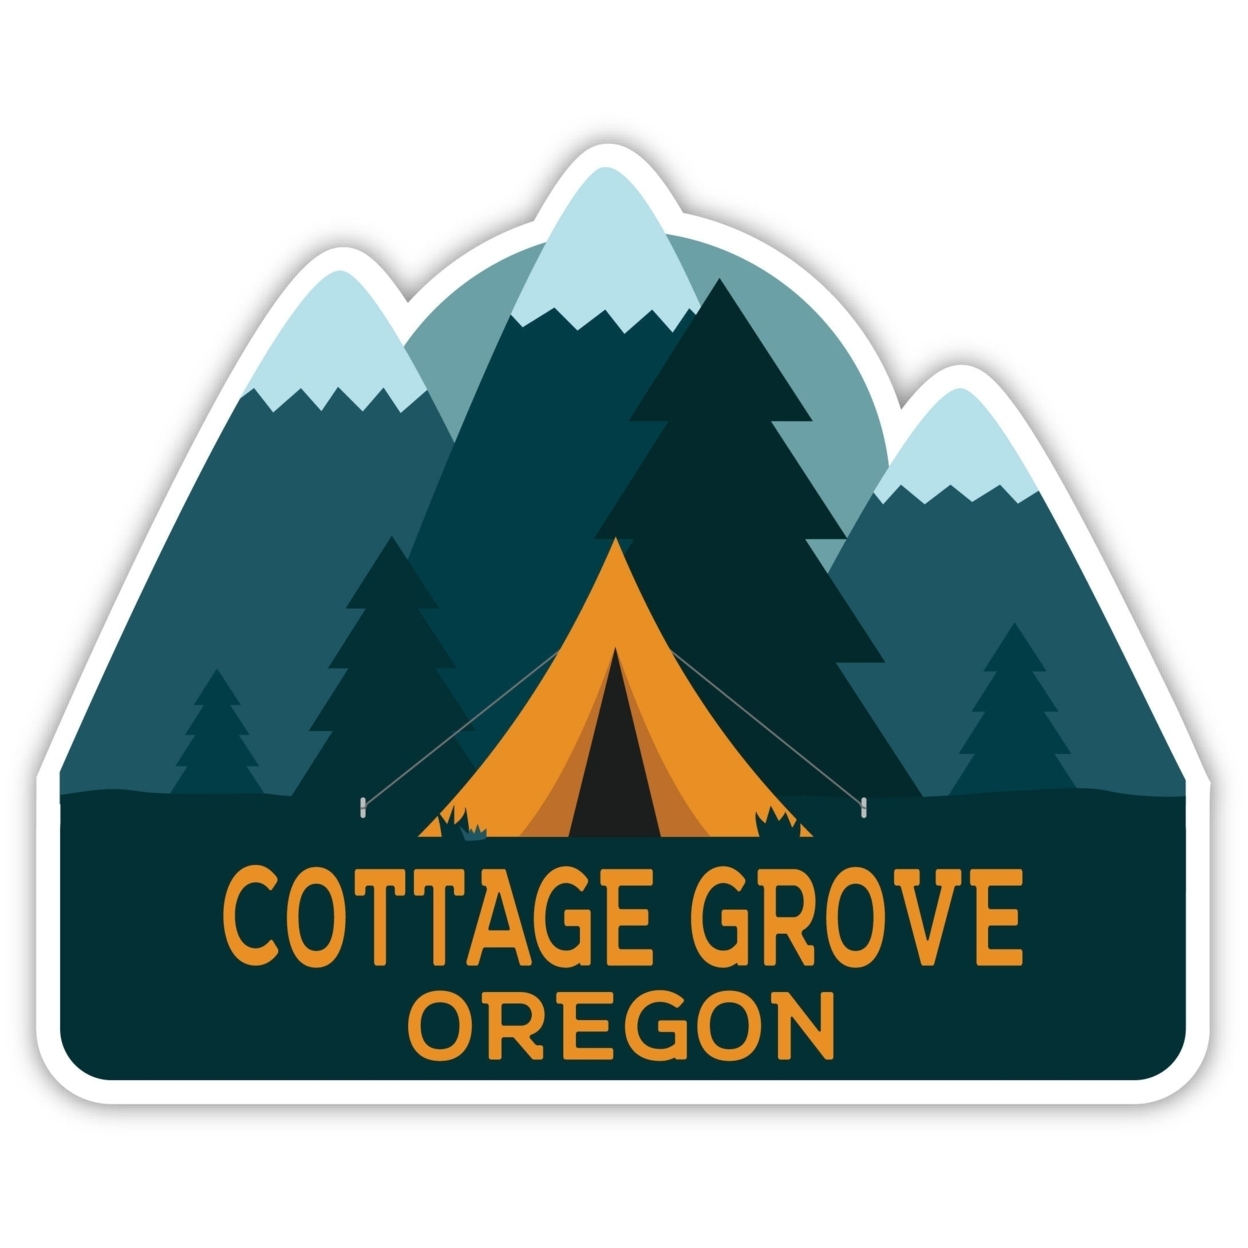 Cottage Grove Oregon Souvenir Decorative Stickers (Choose Theme And Size) - Single Unit, 4-Inch, Tent